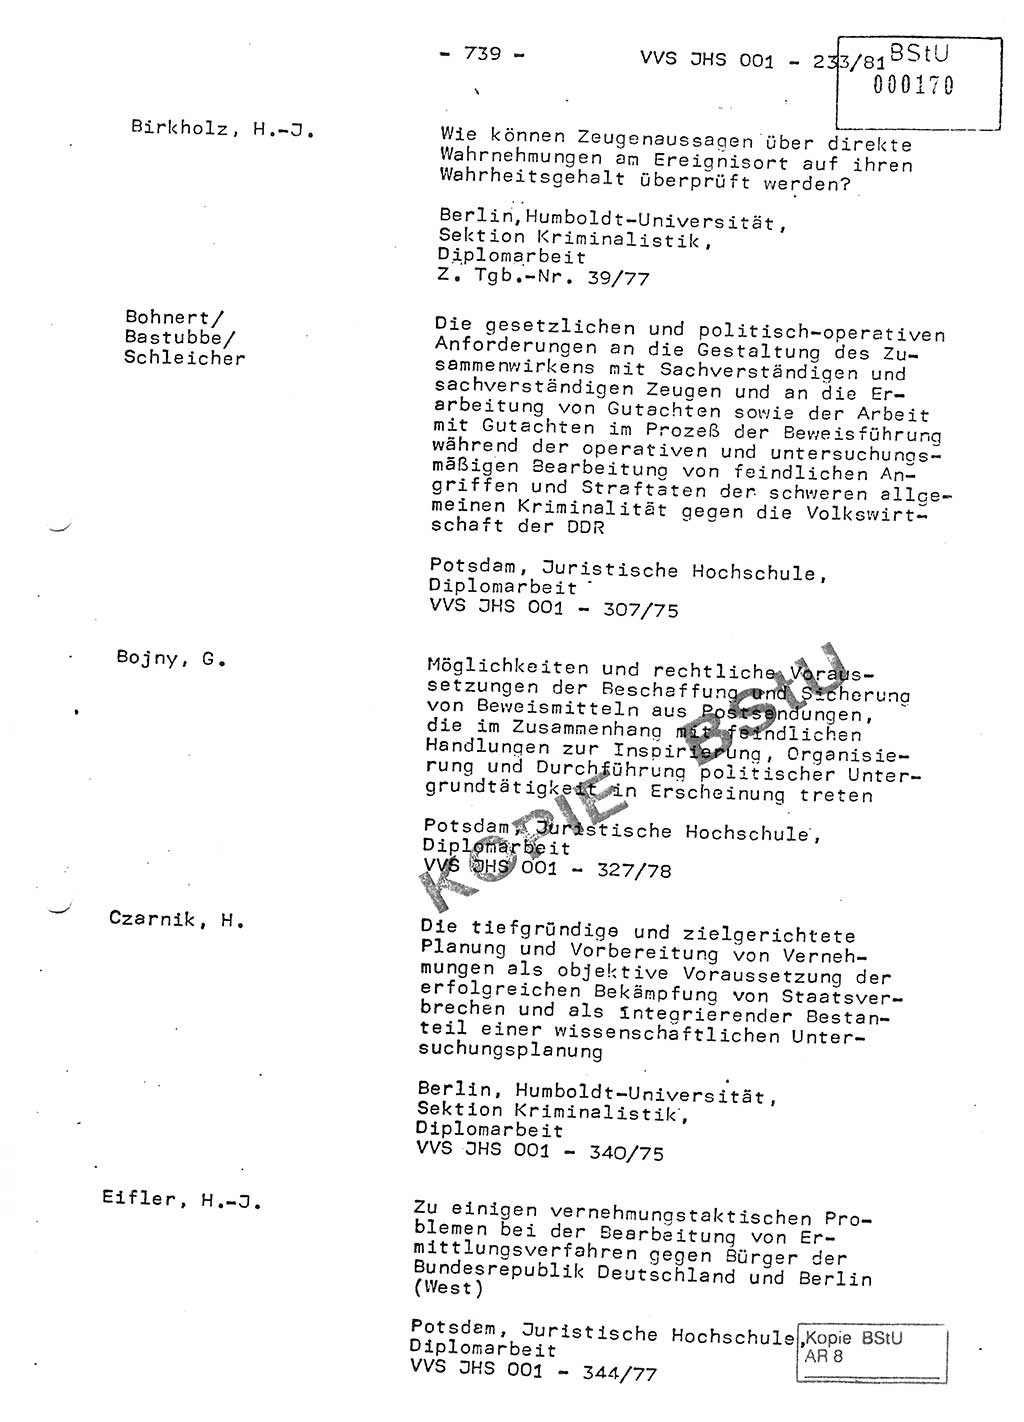 Dissertation Oberstleutnant Horst Zank (JHS), Oberstleutnant Dr. Karl-Heinz Knoblauch (JHS), Oberstleutnant Gustav-Adolf Kowalewski (HA Ⅸ), Oberstleutnant Wolfgang Plötner (HA Ⅸ), Ministerium für Staatssicherheit (MfS) [Deutsche Demokratische Republik (DDR)], Juristische Hochschule (JHS), Vertrauliche Verschlußsache (VVS) o001-233/81, Potsdam 1981, Blatt 739 (Diss. MfS DDR JHS VVS o001-233/81 1981, Bl. 739)